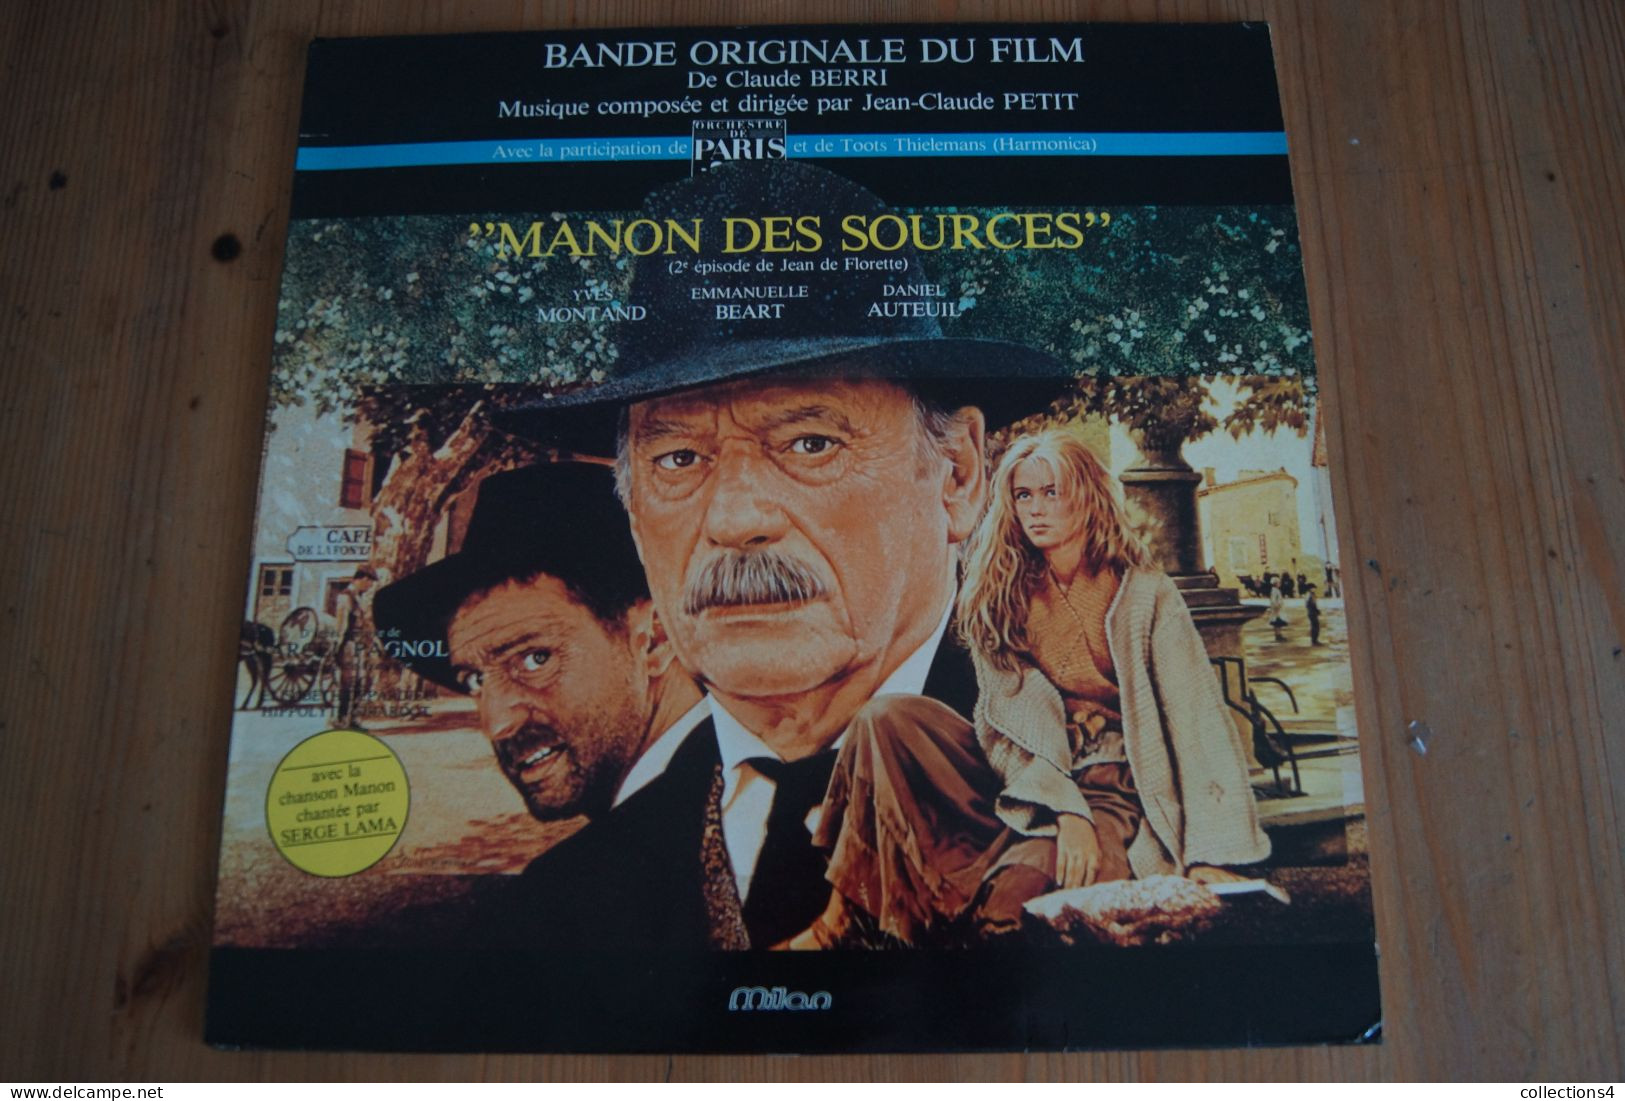 MANON DES SOURCES JEAN CLAUDE PETIT SERGE LAMA MARCEL PAGNOL EMMANUELLE BEART MONTAND DANIEL AUTEUIL LP DU FILM 1986 - Filmmuziek